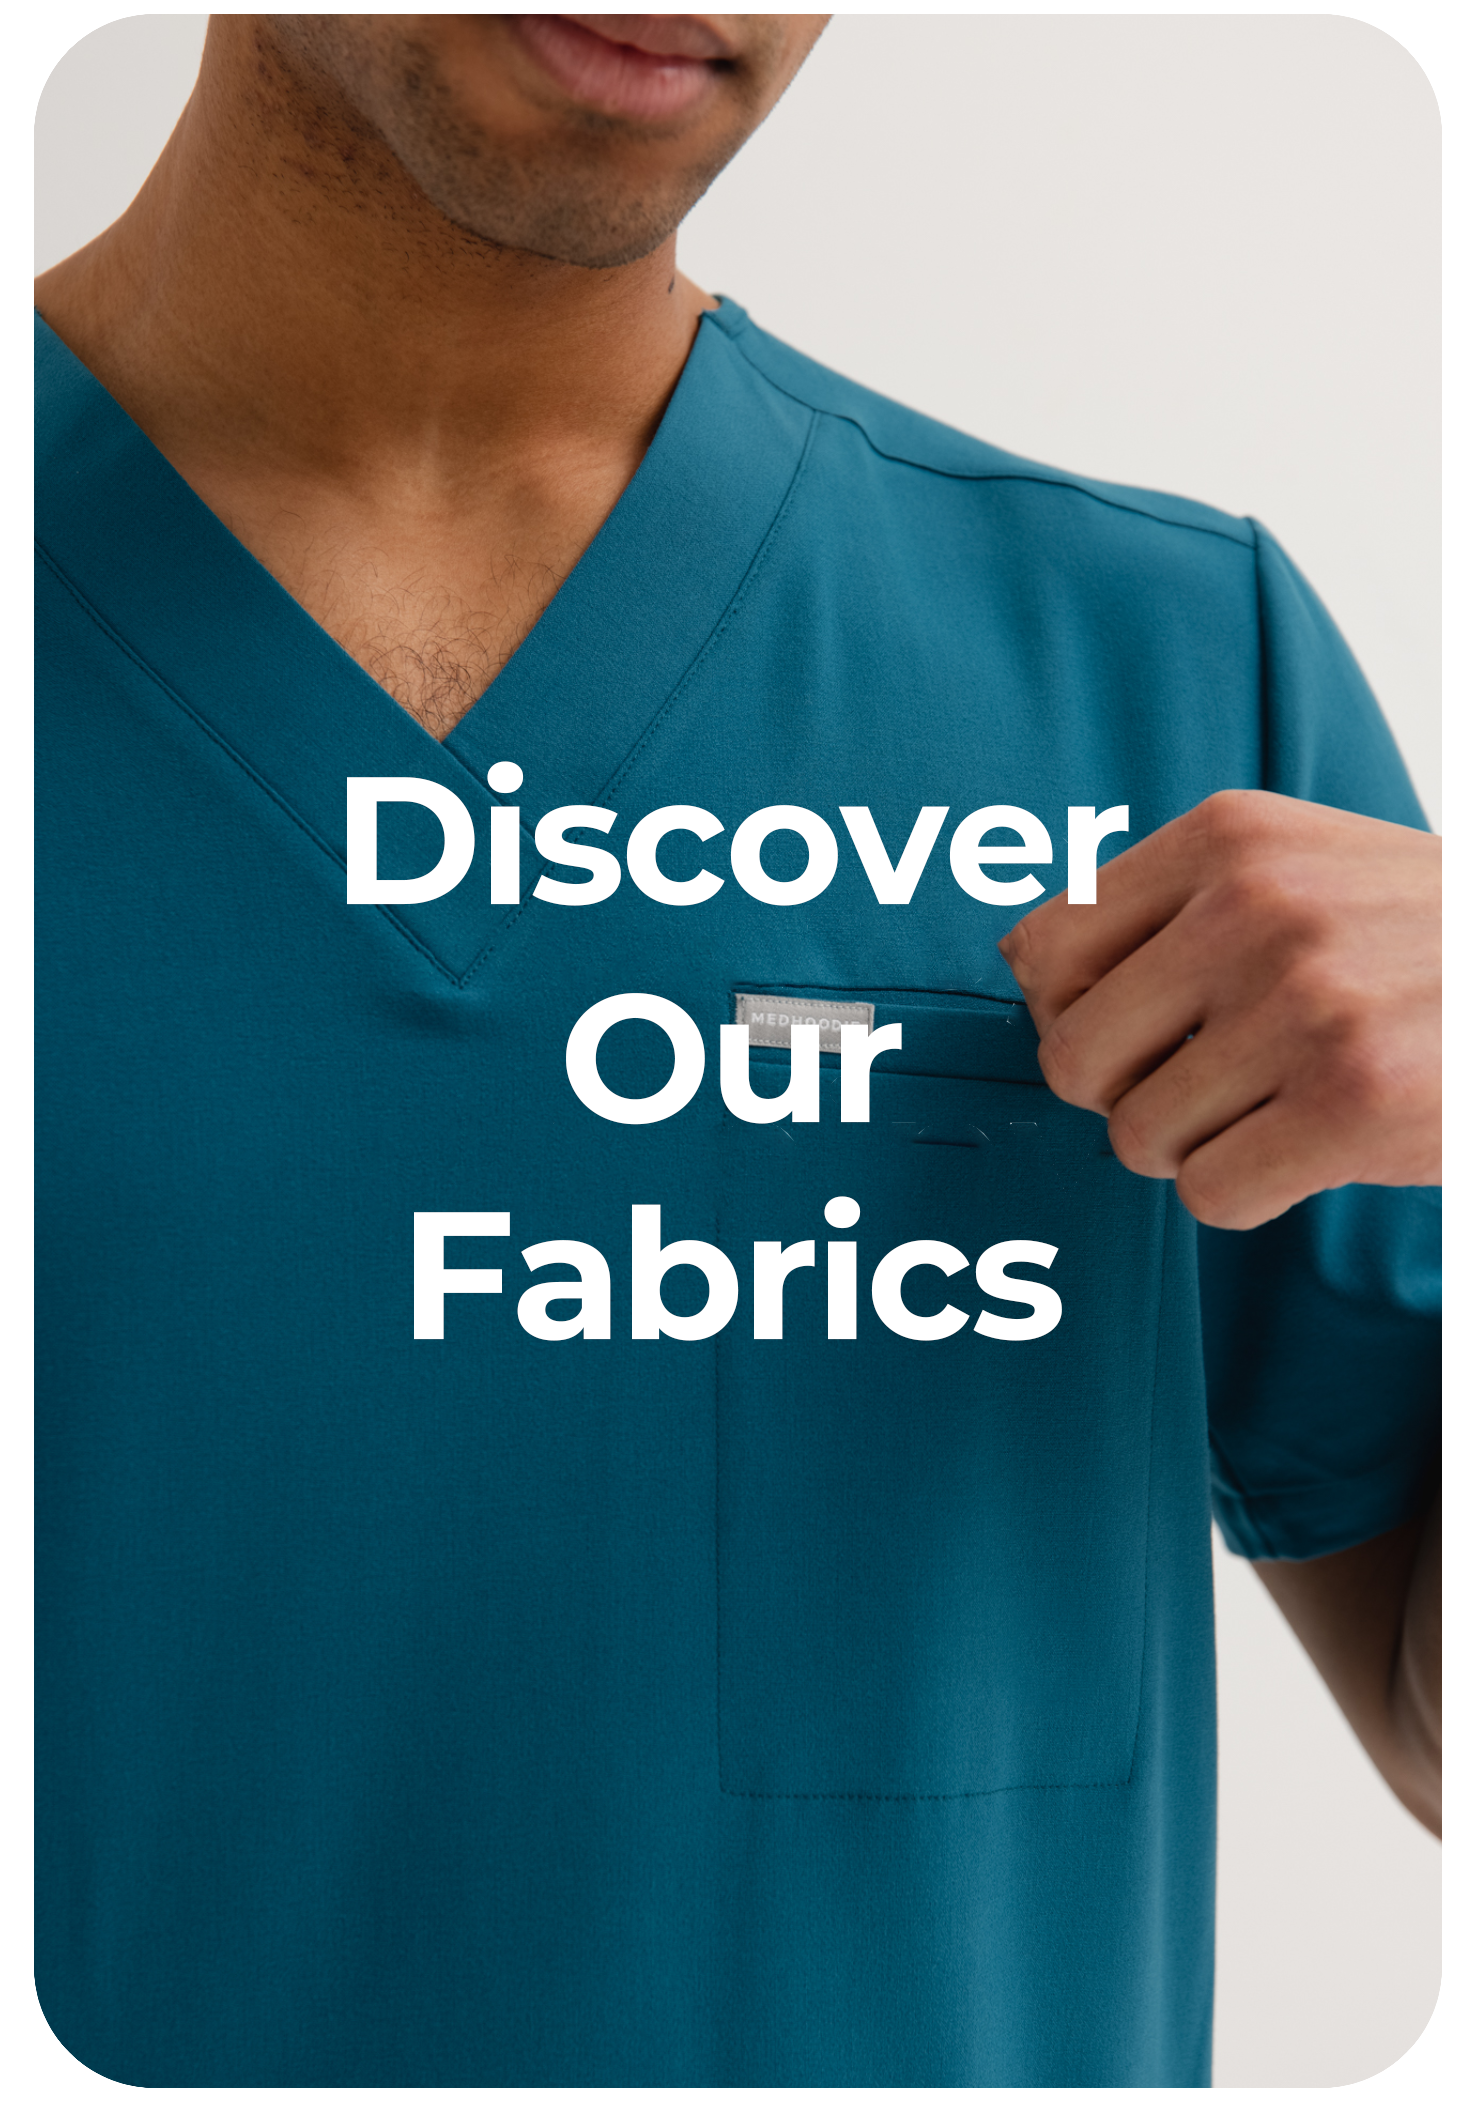 Discover our fabrics